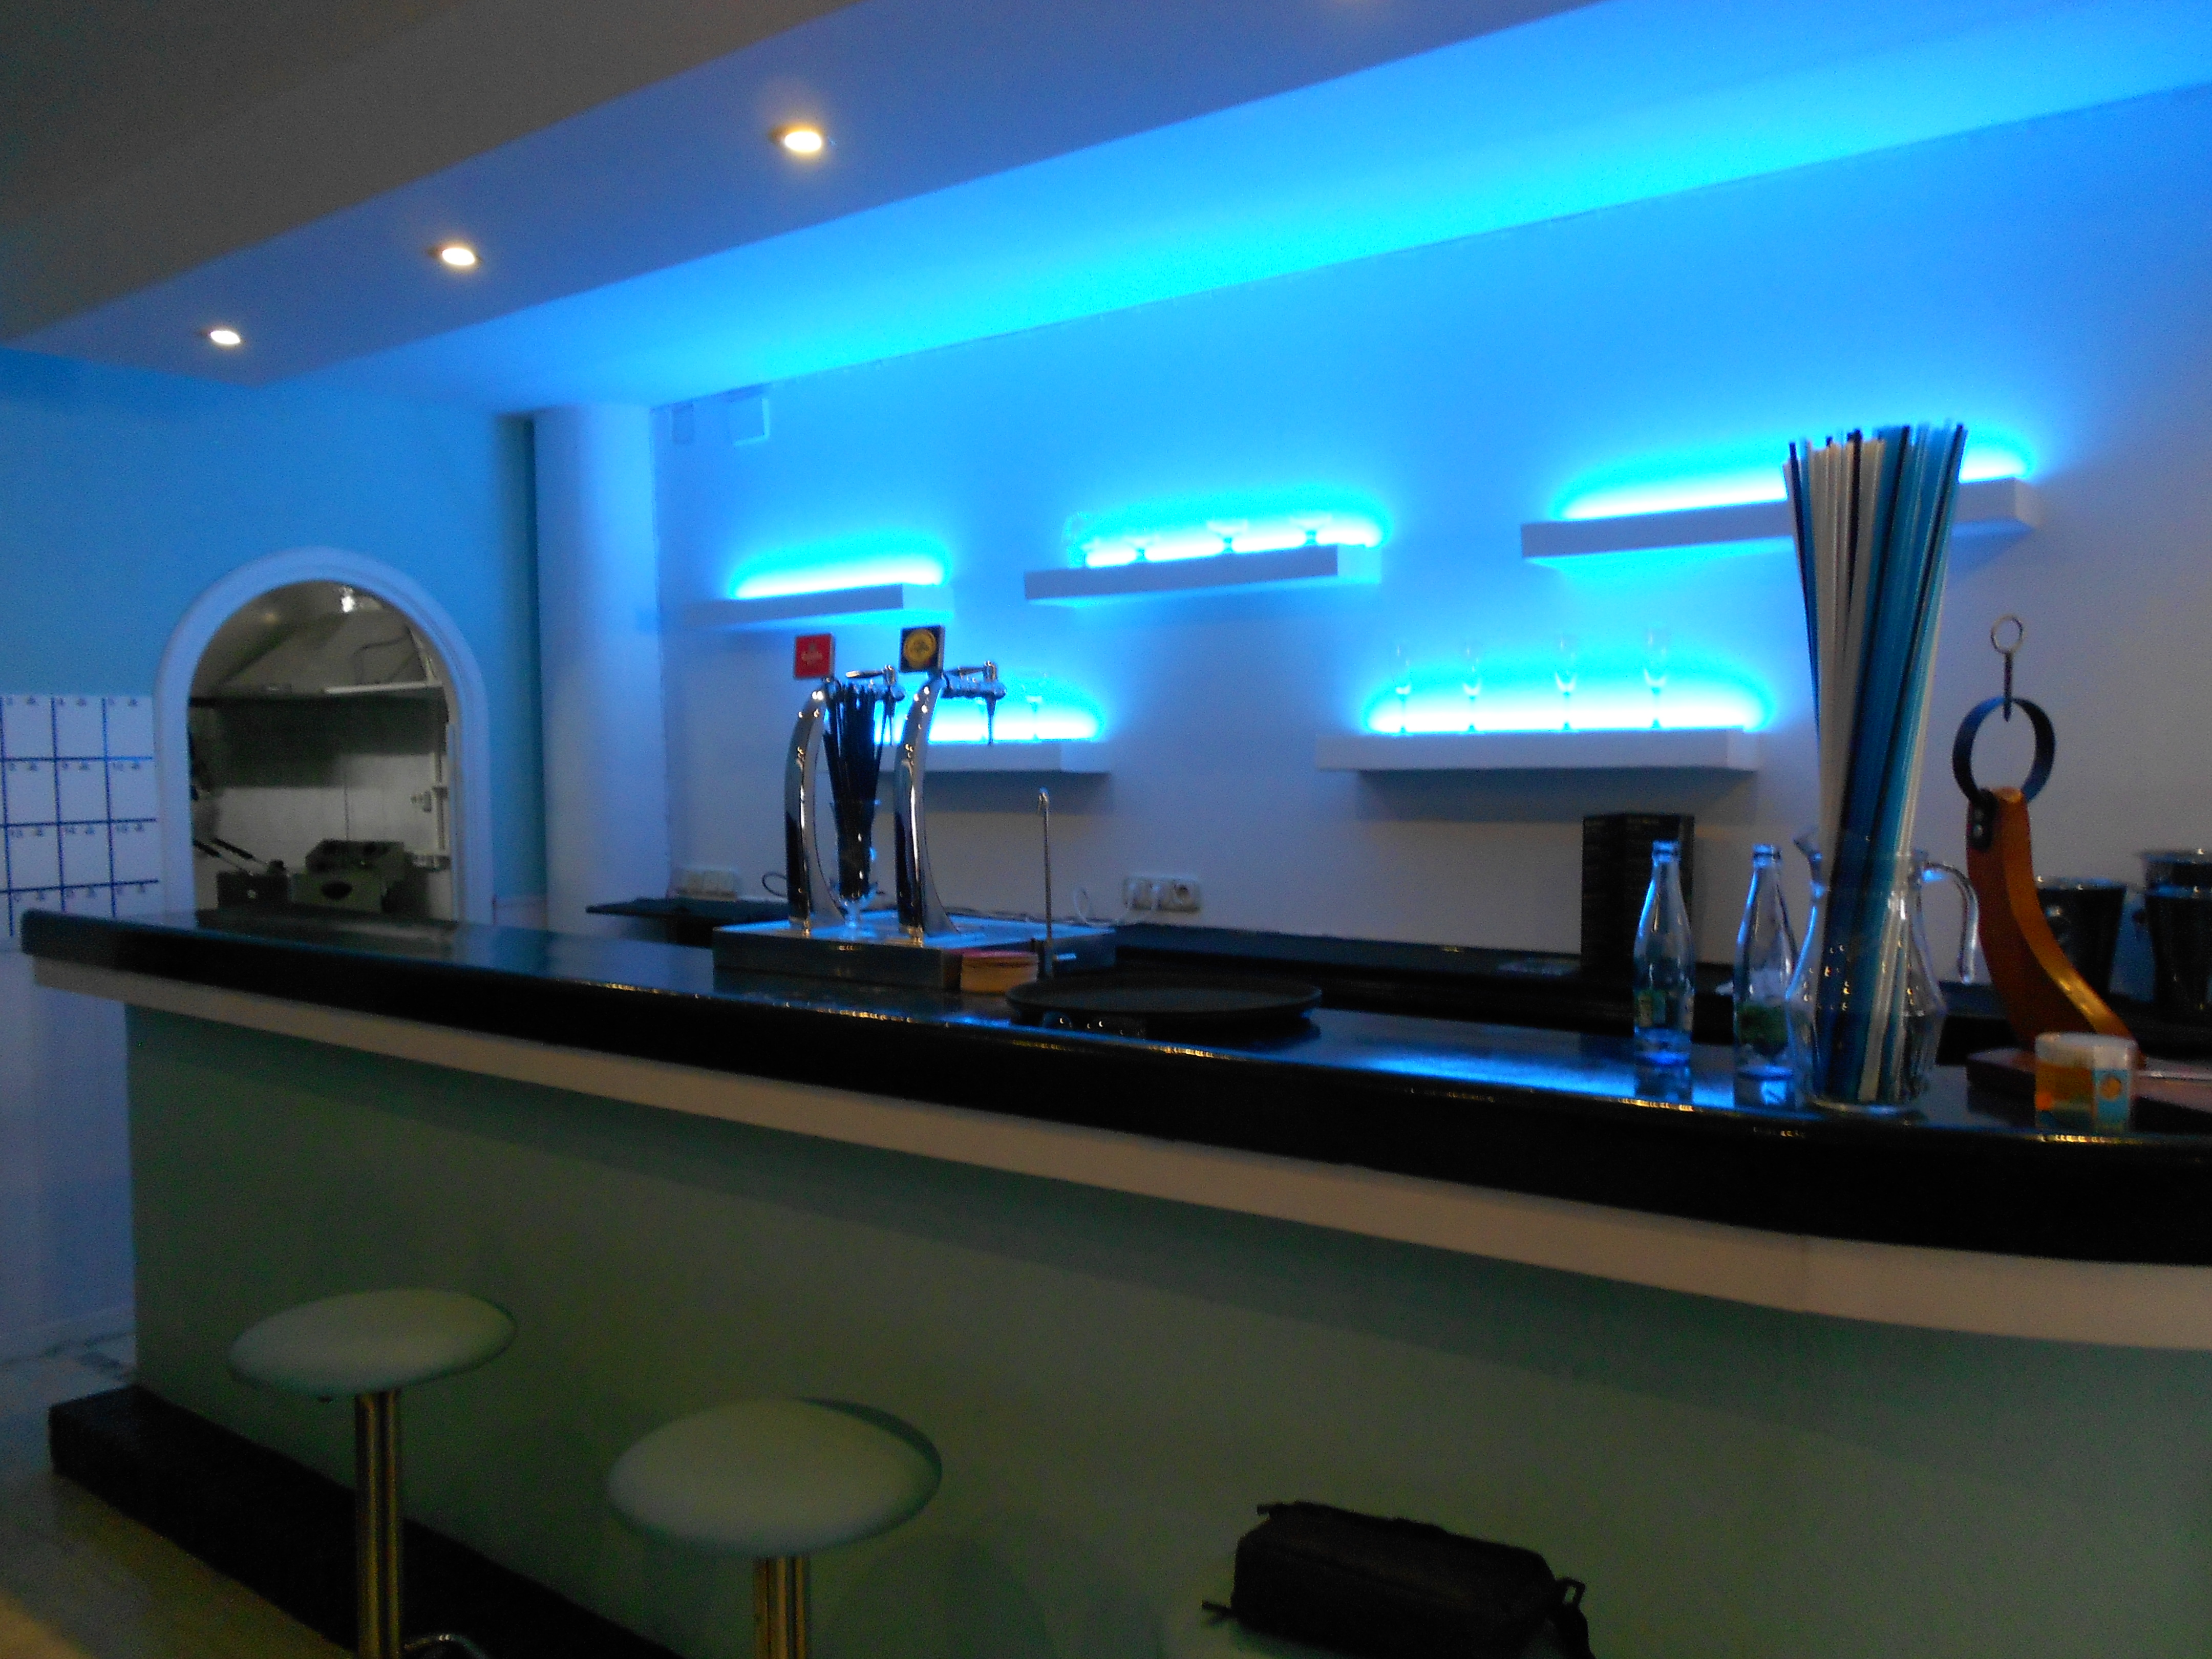 Illuminated Bar